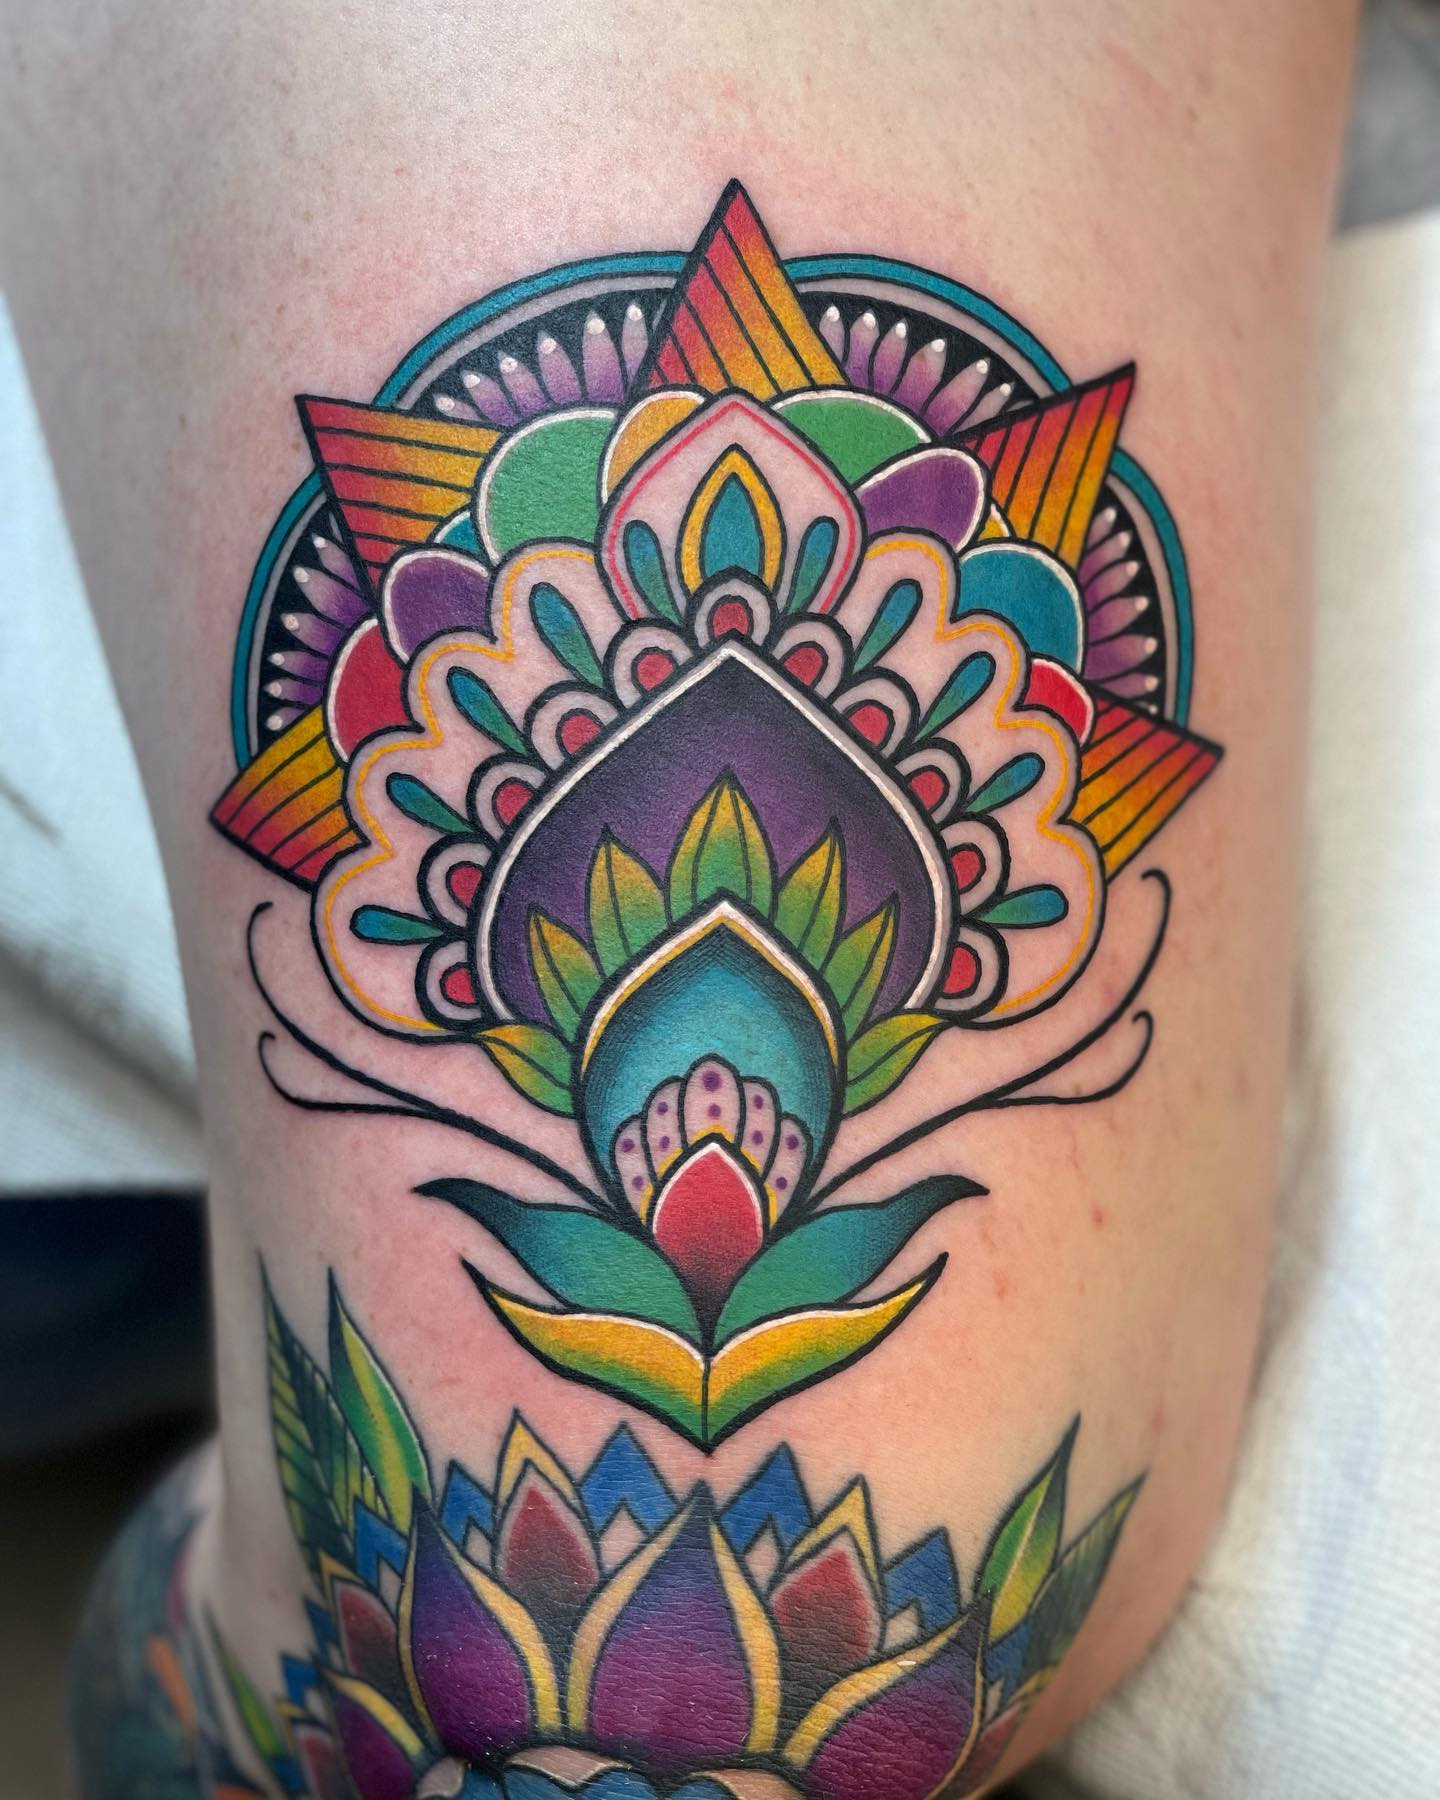 Tatuaje de Mandala Colorido Encima de la Rodilla